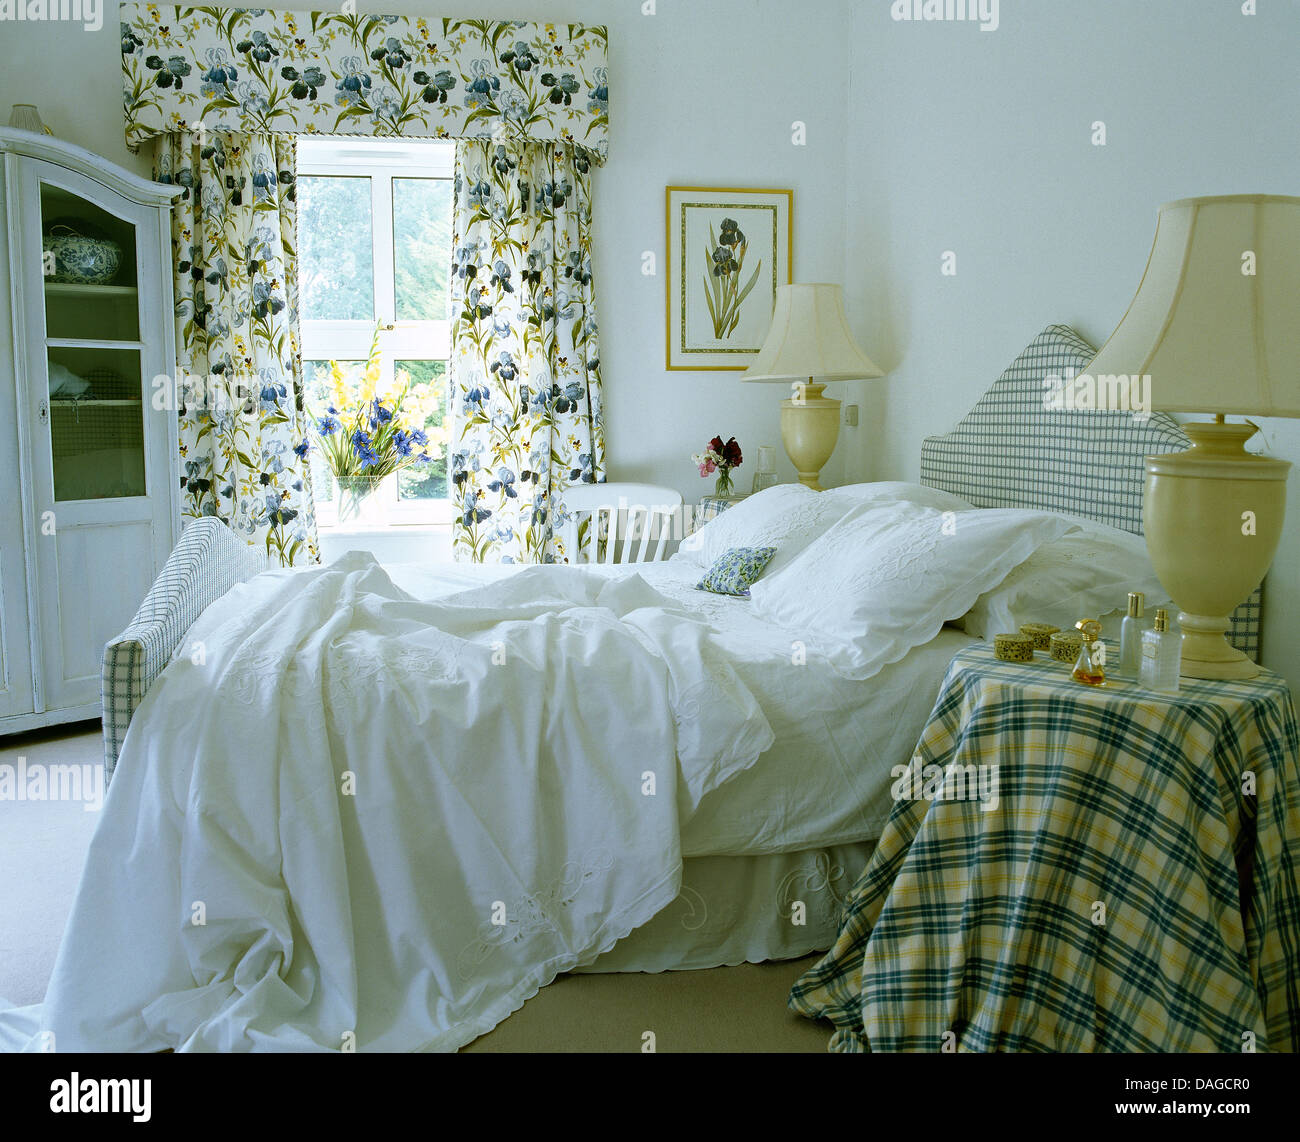 Cuscini bianchi e fogli spiegazzati sul letto nella camera da letto del paese controllato con panno sul comodino e drappeggi floreali sulla finestra Foto Stock